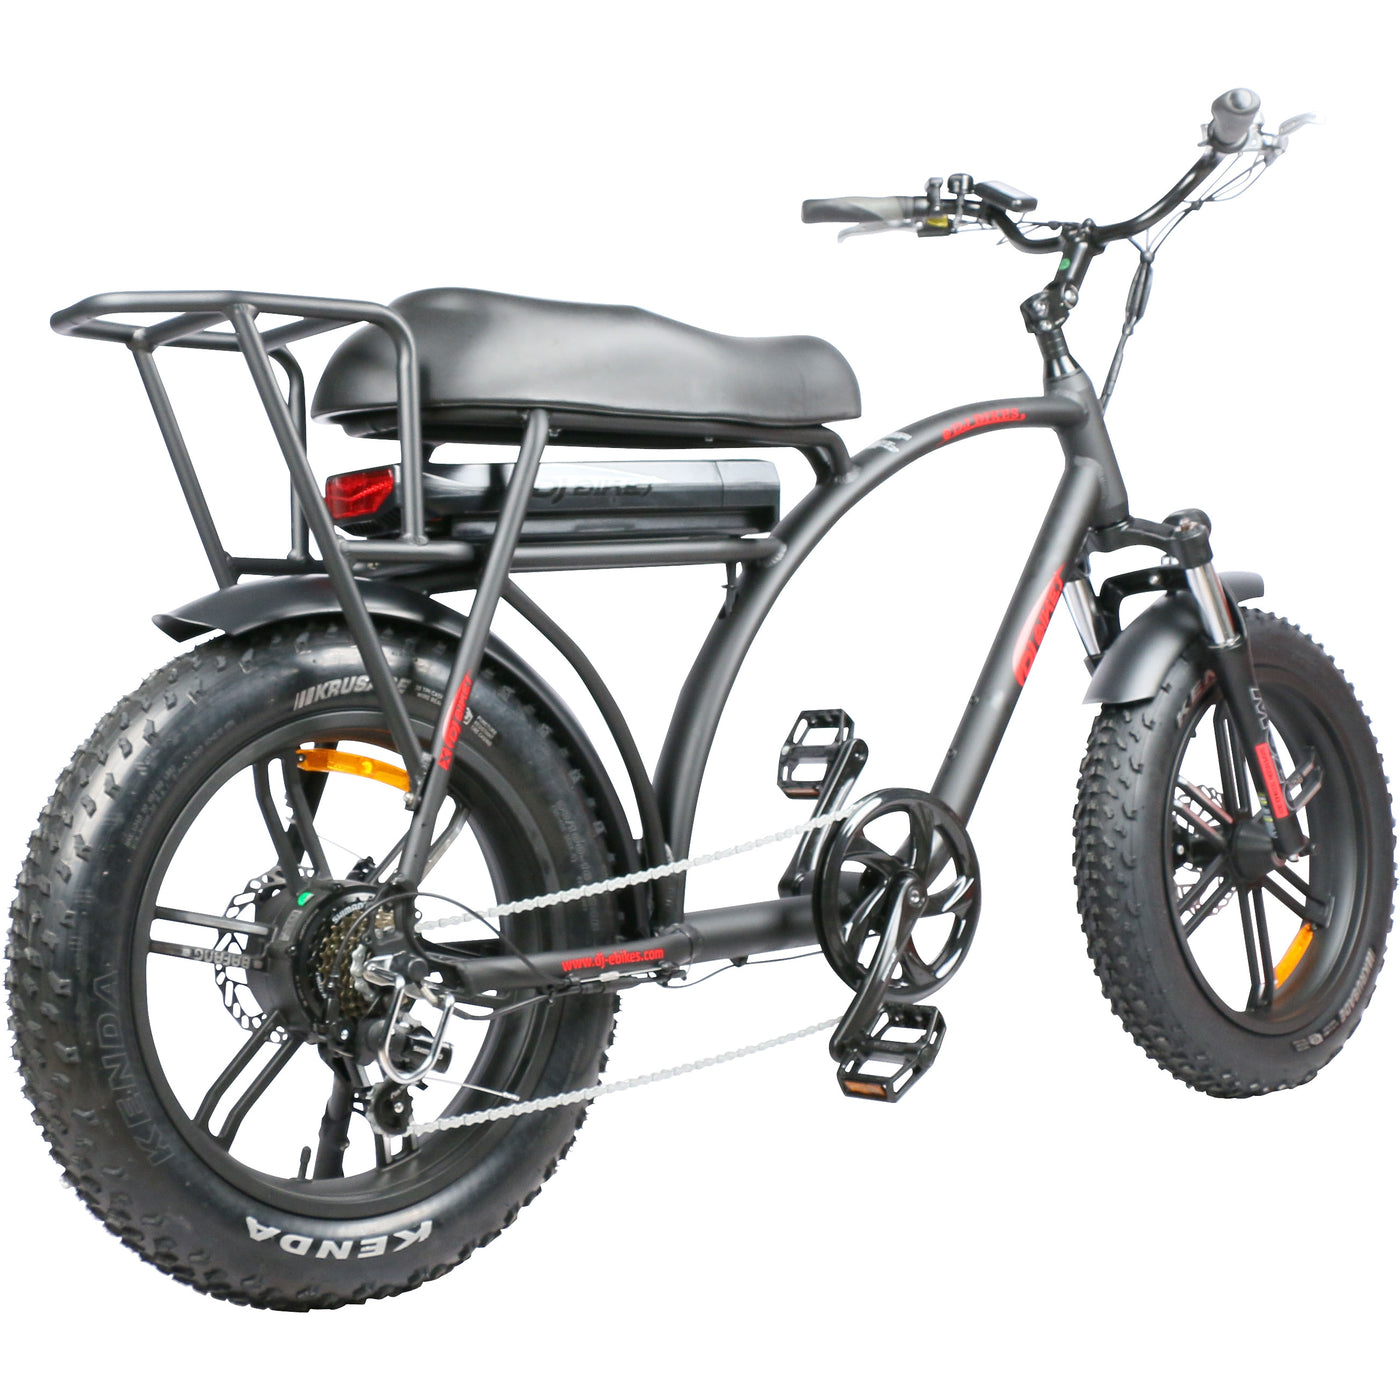 Electric Mini Bike, DJ Super Bike, mini bike style ebike with fat tires and new rear rack 